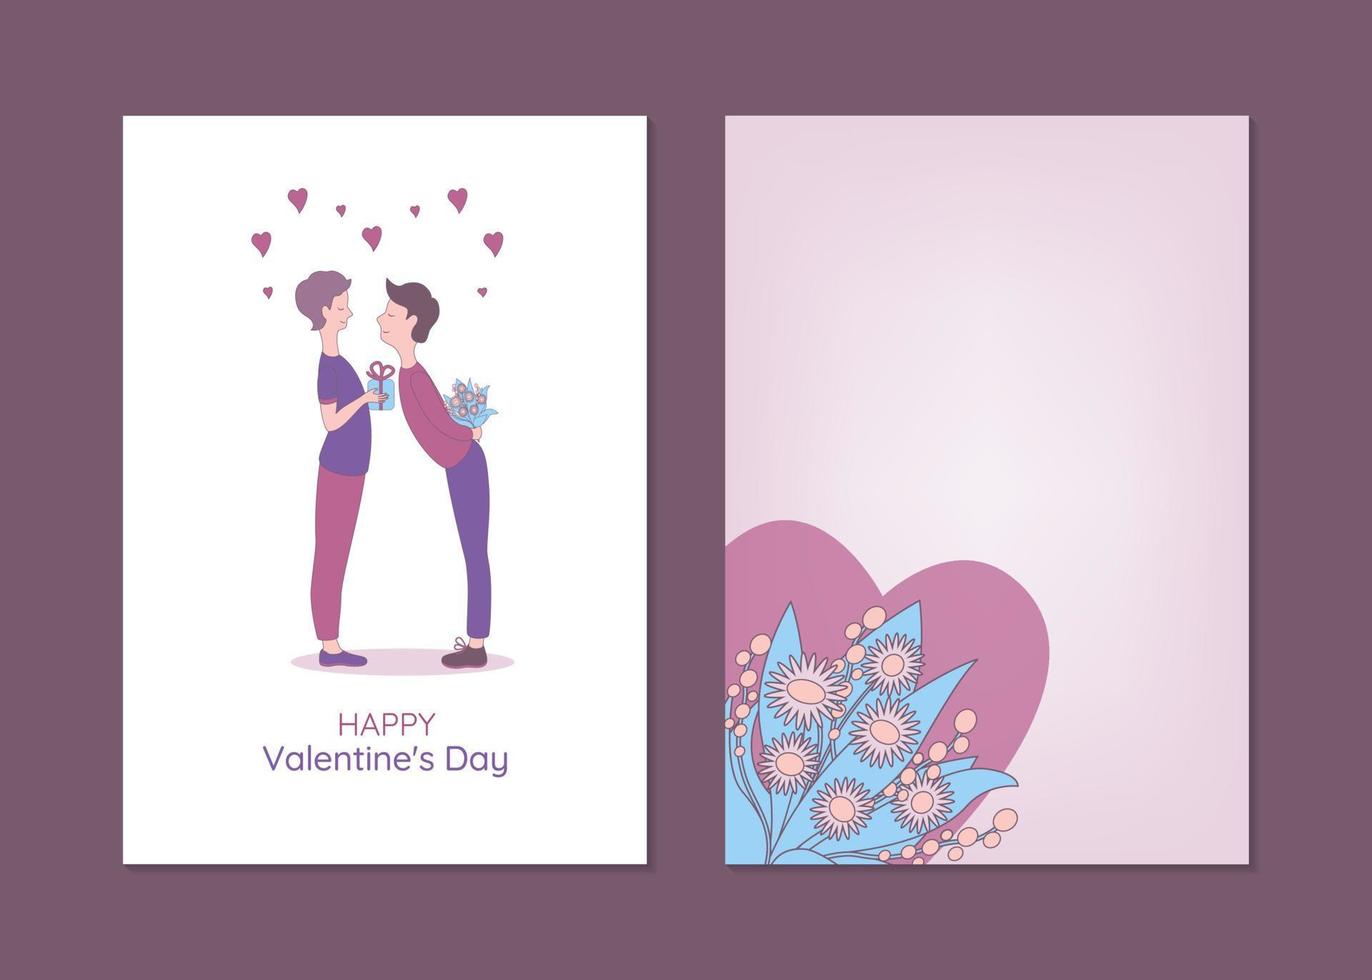 modèles de cartes de voeux saint valentin avec des personnes lgbtq. illustration vectorielle dessinée à la main d'un couple gay échangeant des cadeaux. vecteur